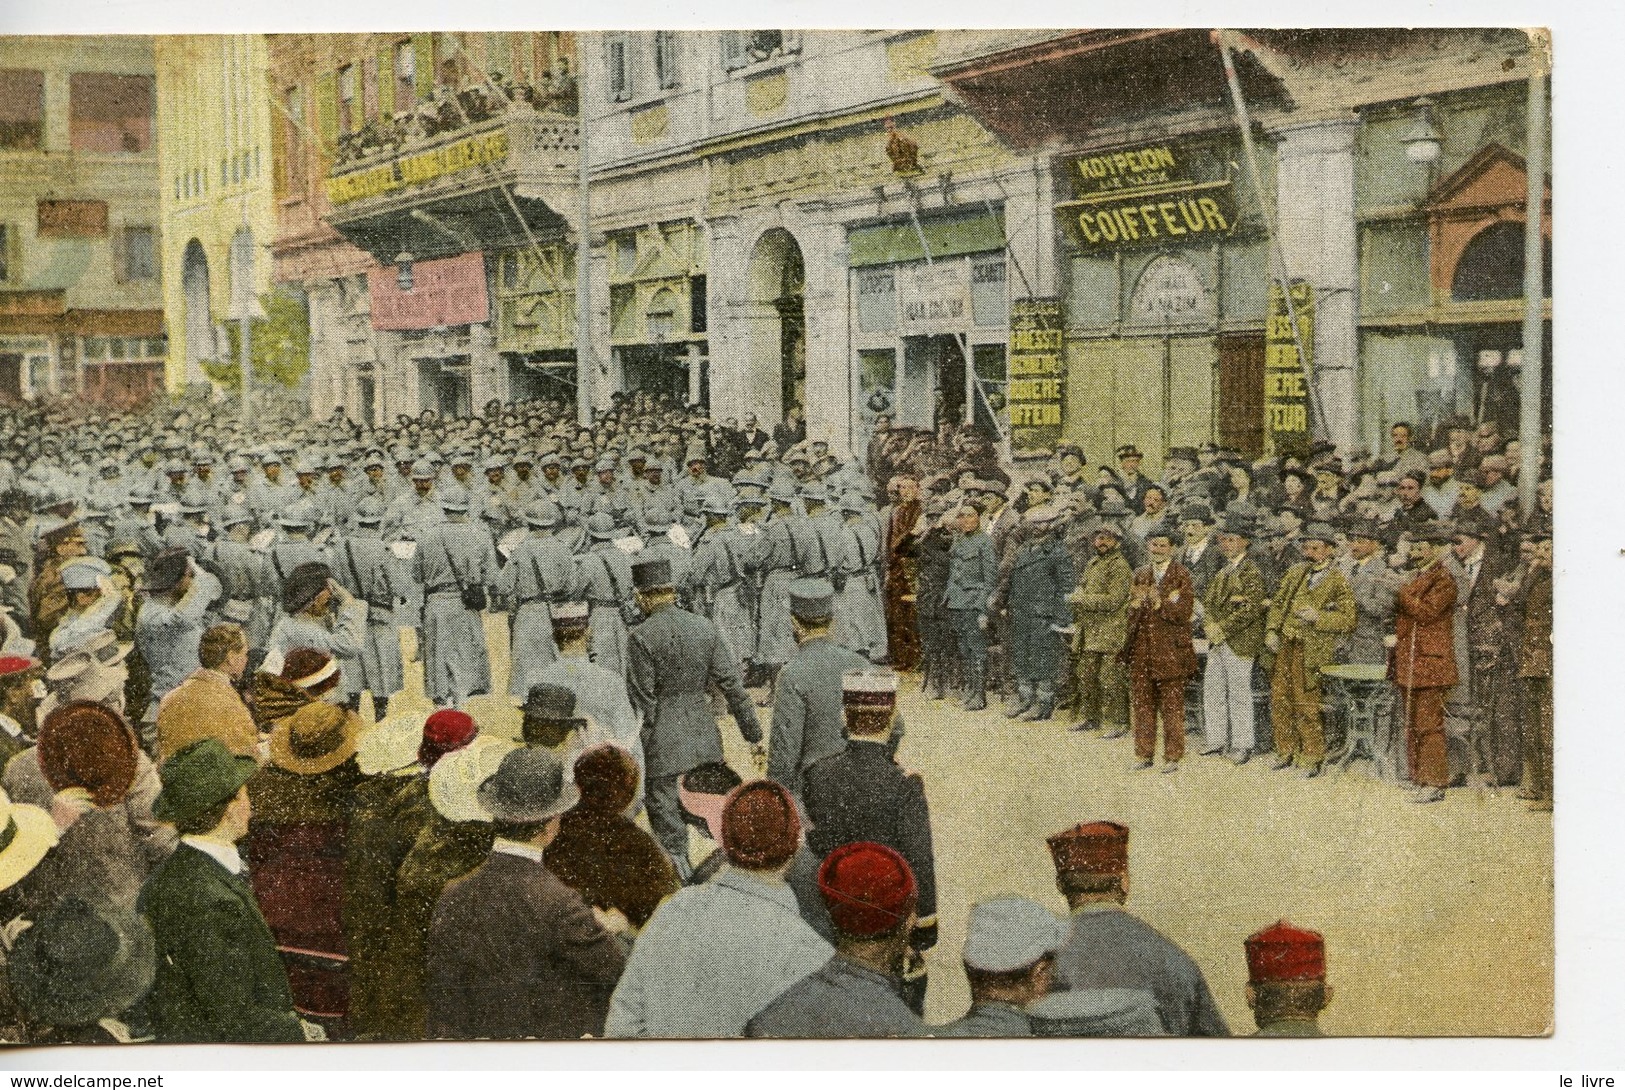 CPA COLORISEE GRECE SALONIQUE. MILITAIRES. CONCERT PLACE DE LA LIBERTE. 1918